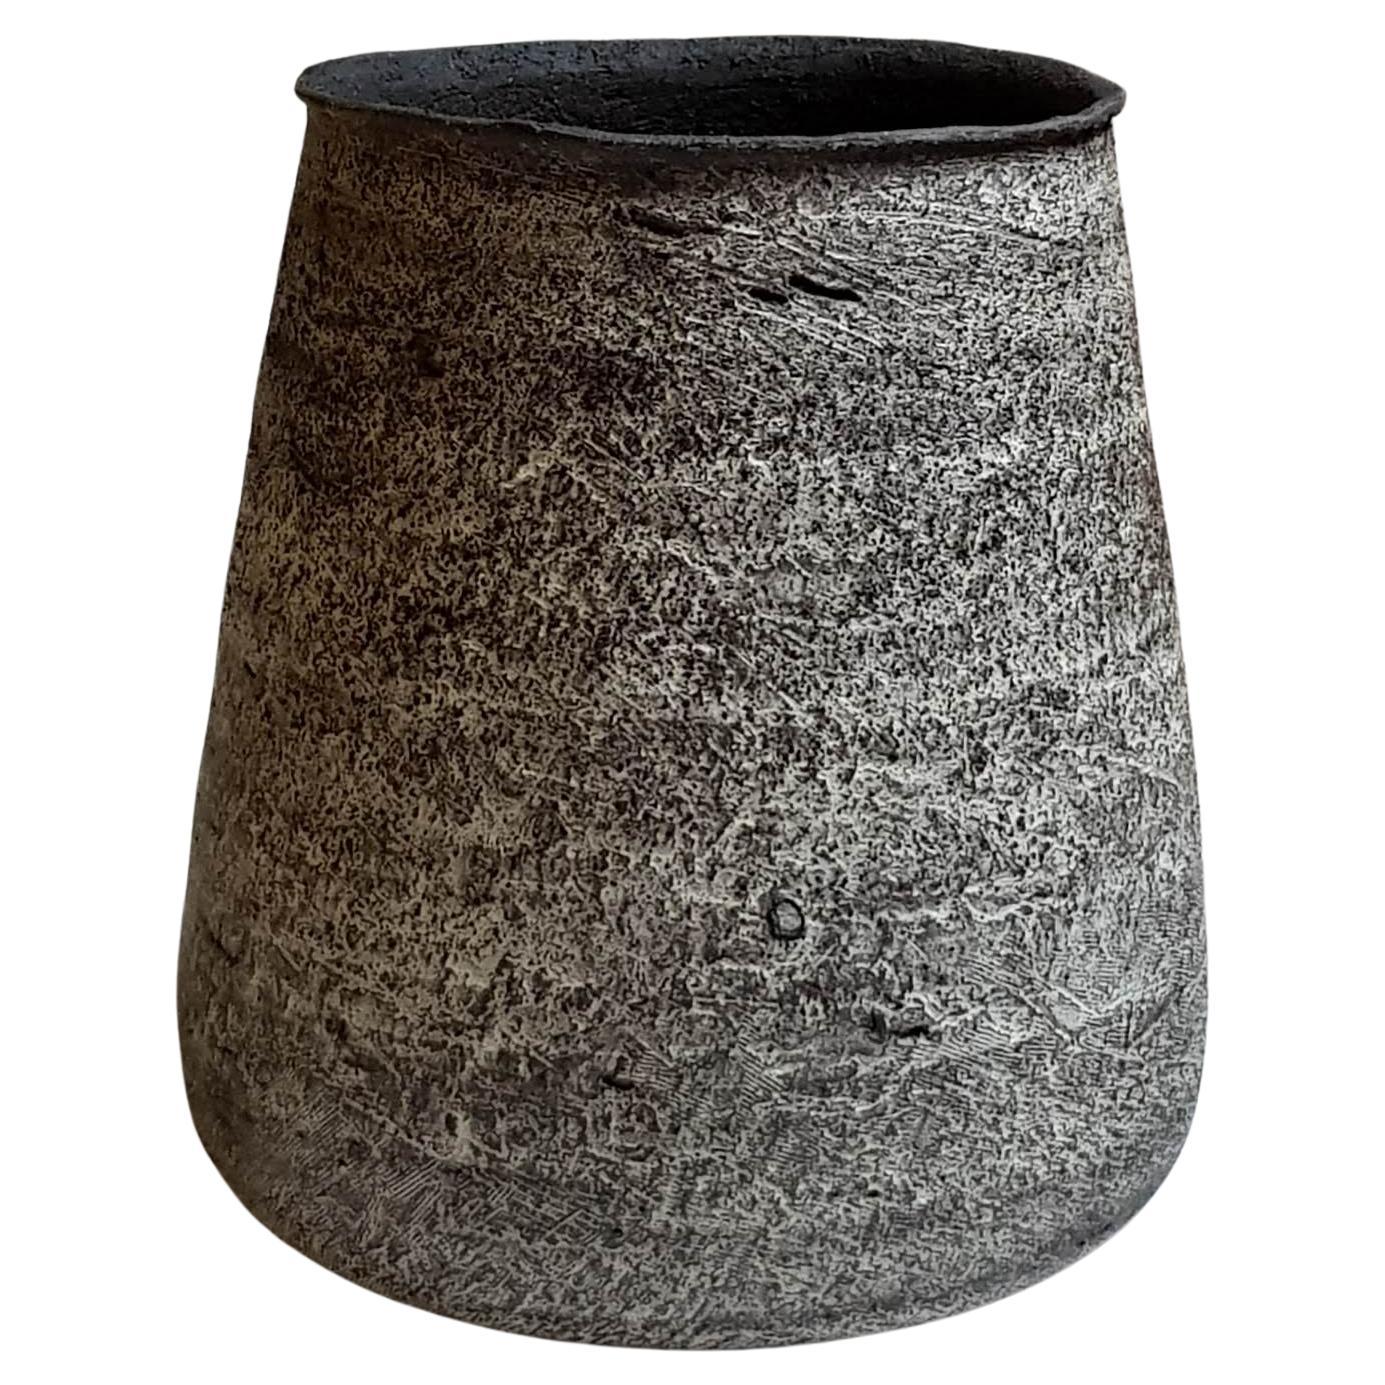 Black Stoneware Kalathos Vase by Elena Vasilantonaki